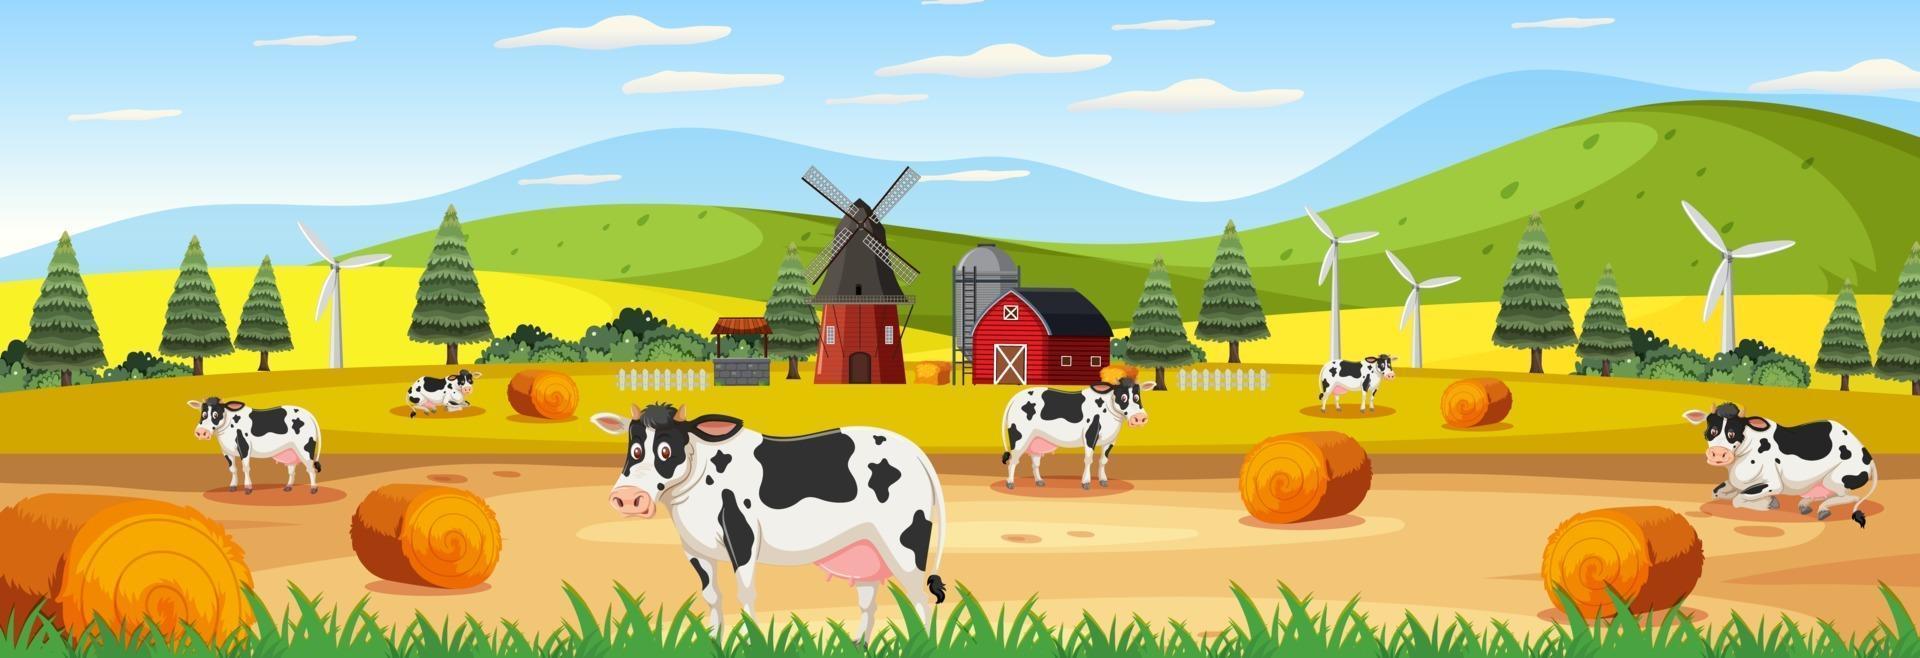 cena panorâmica de paisagem com muitas vacas na fazenda vetor